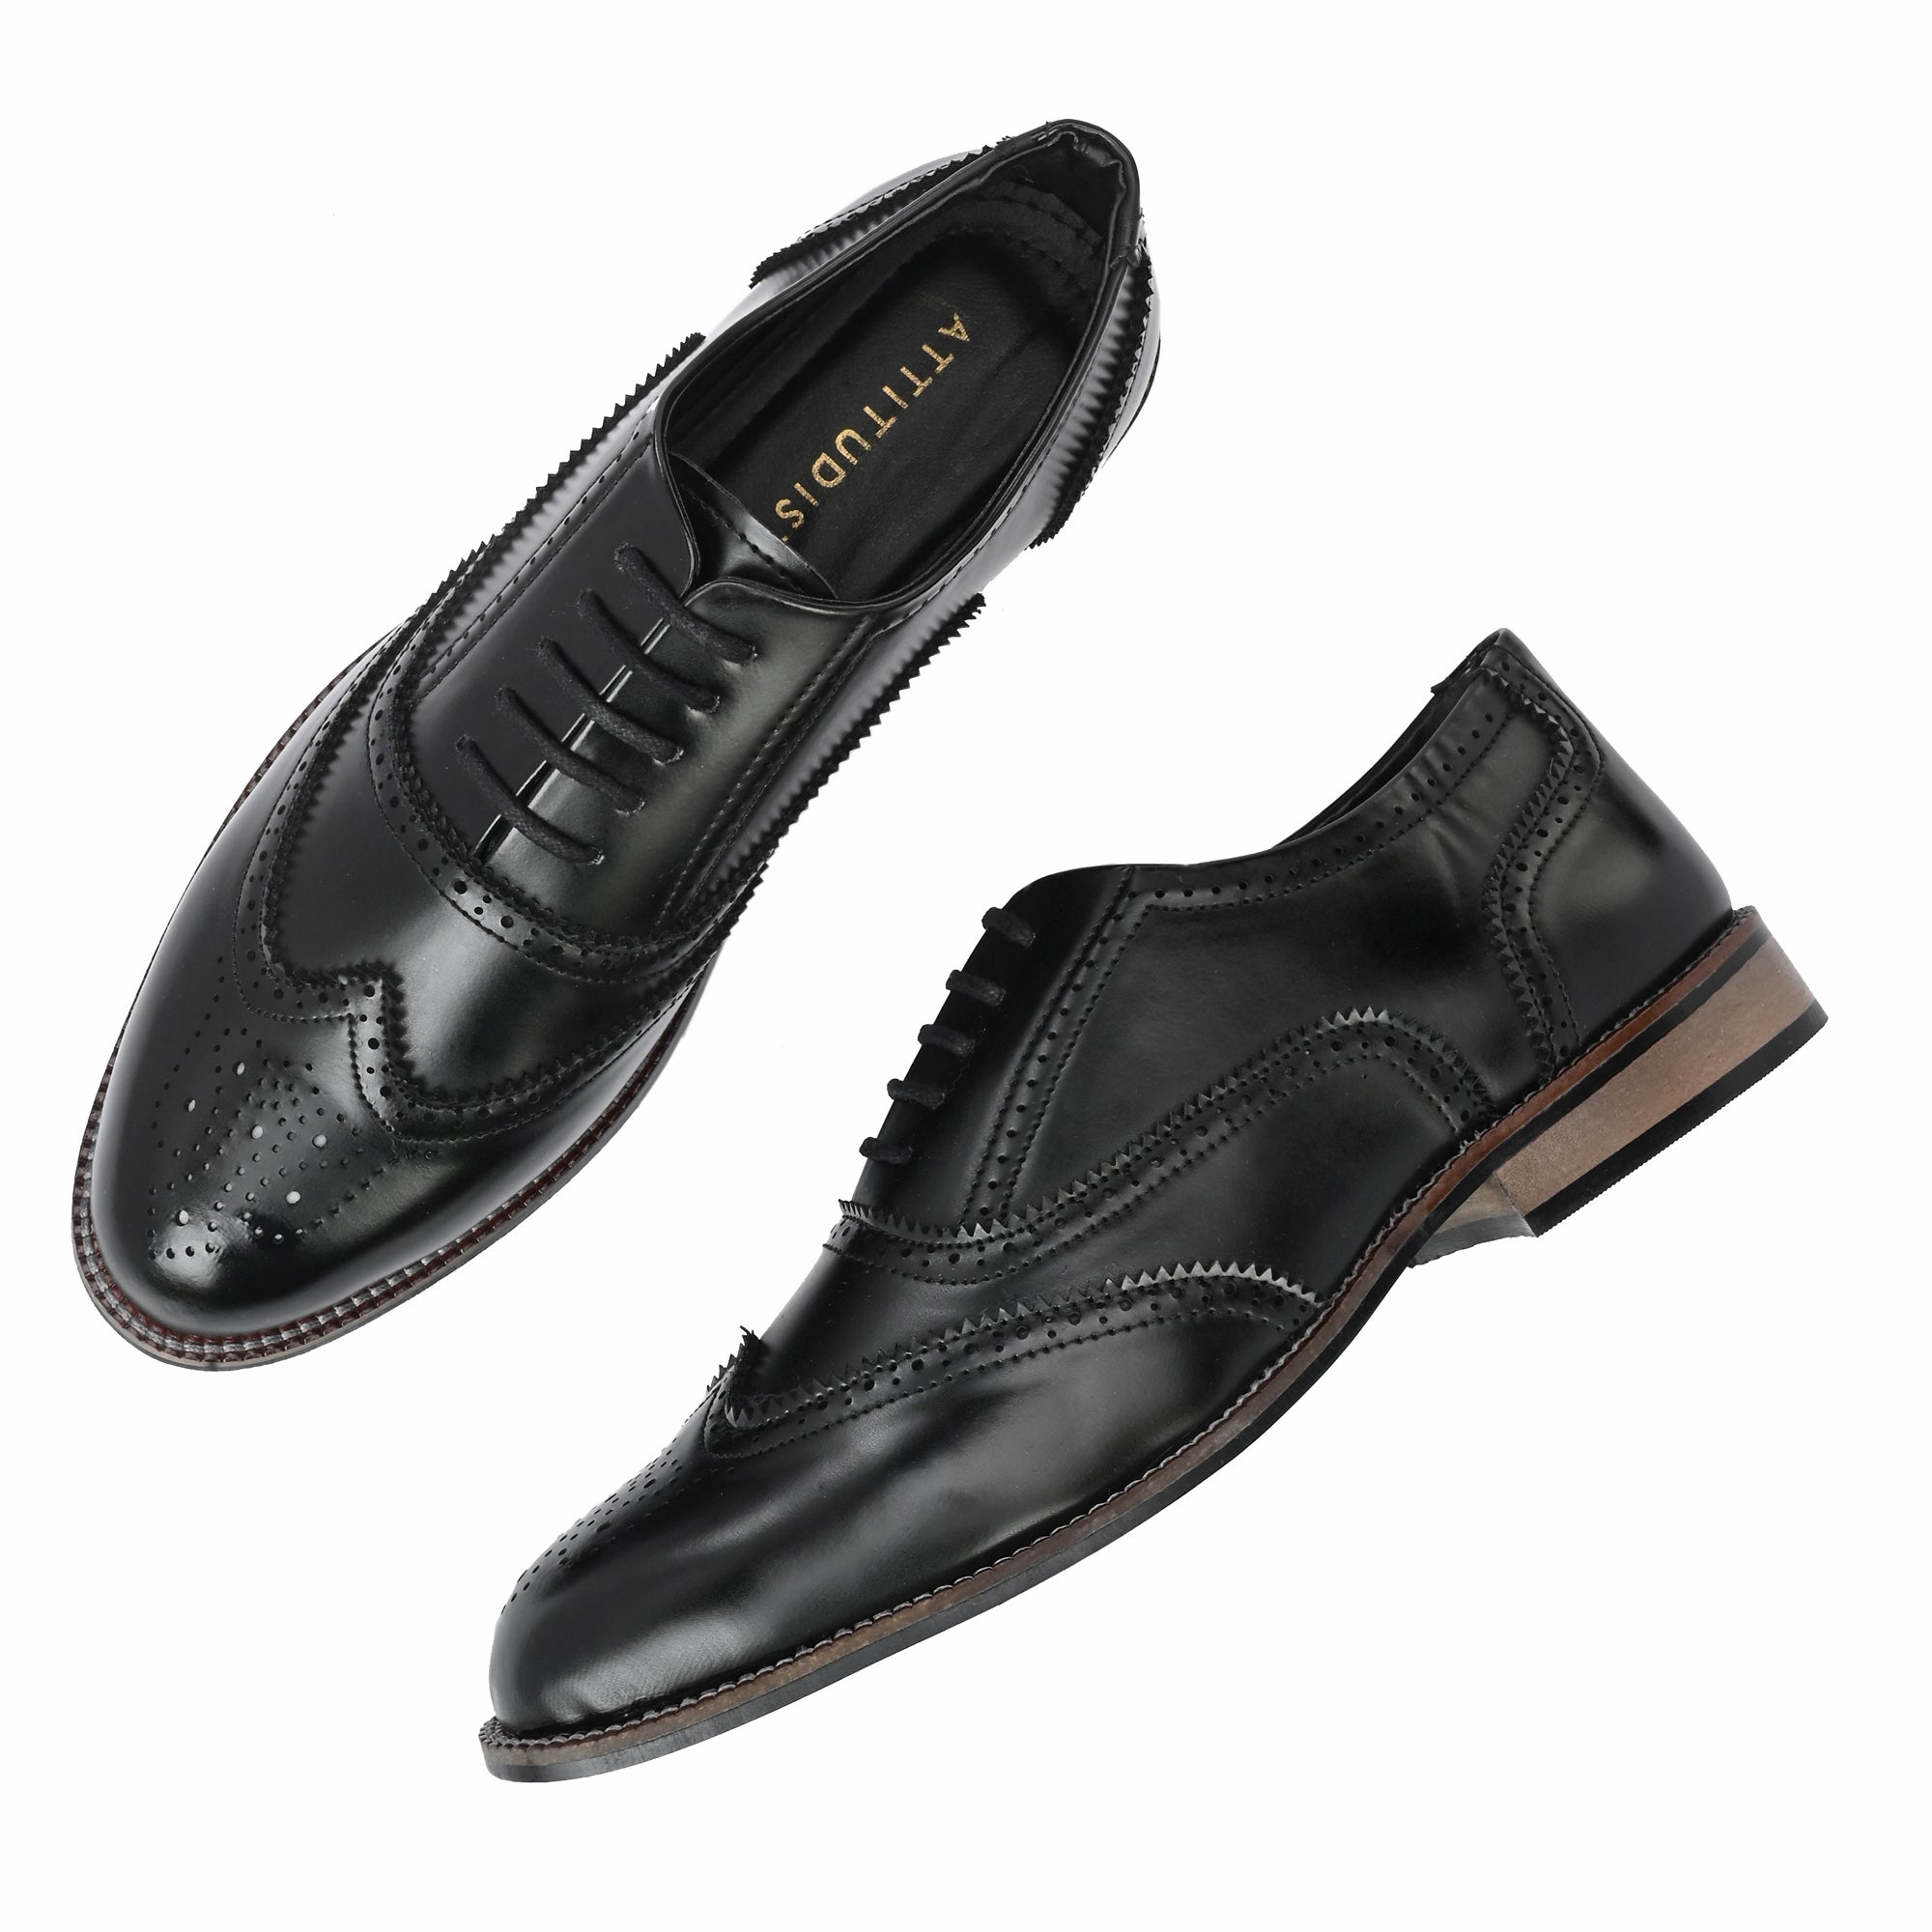 attitudist-black-wing-tip-formal-lace-up-brouge-shoes-for-men